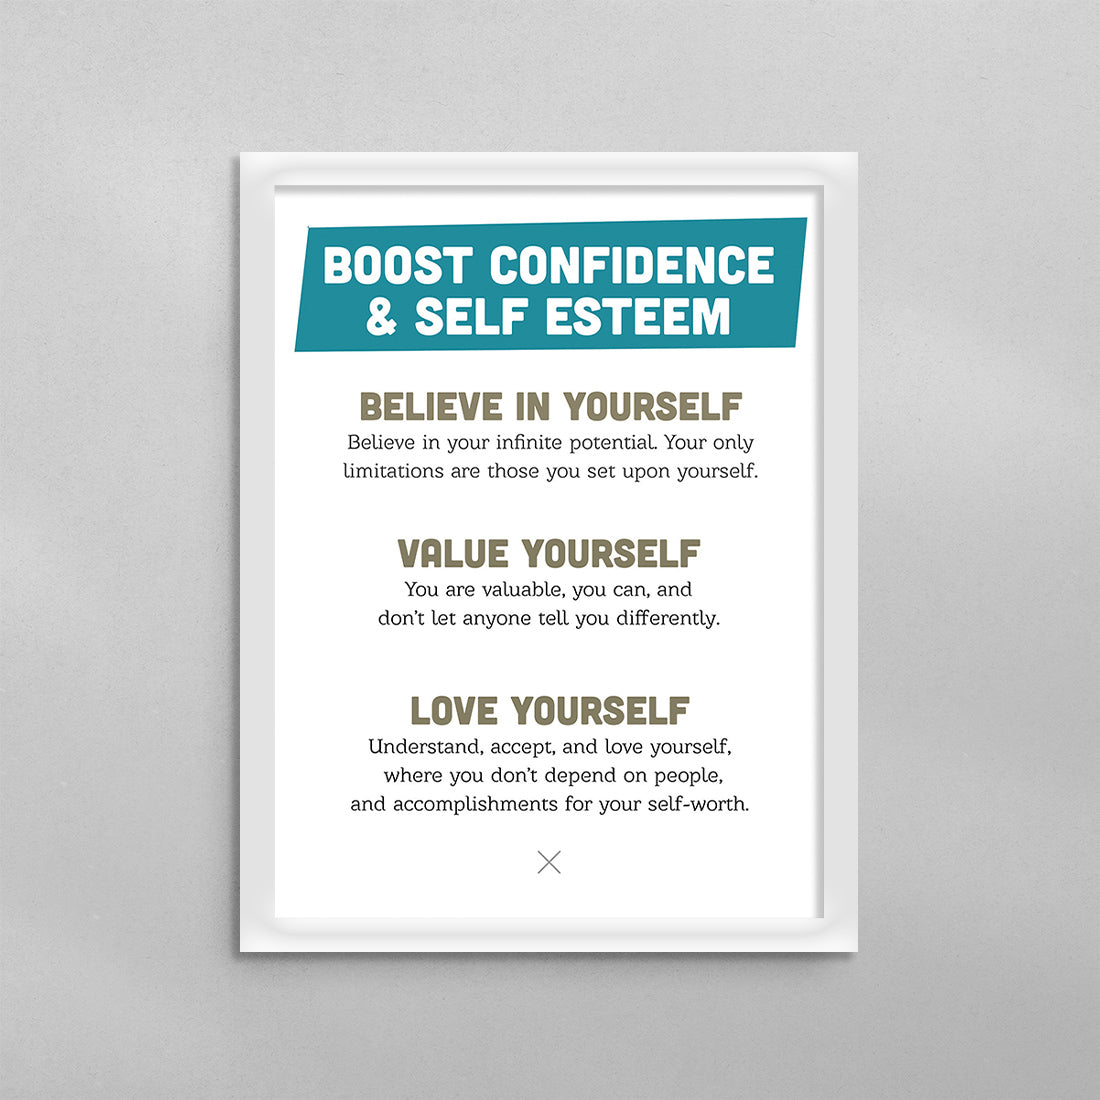 Boost Self Confidence & Self Esteem Poster